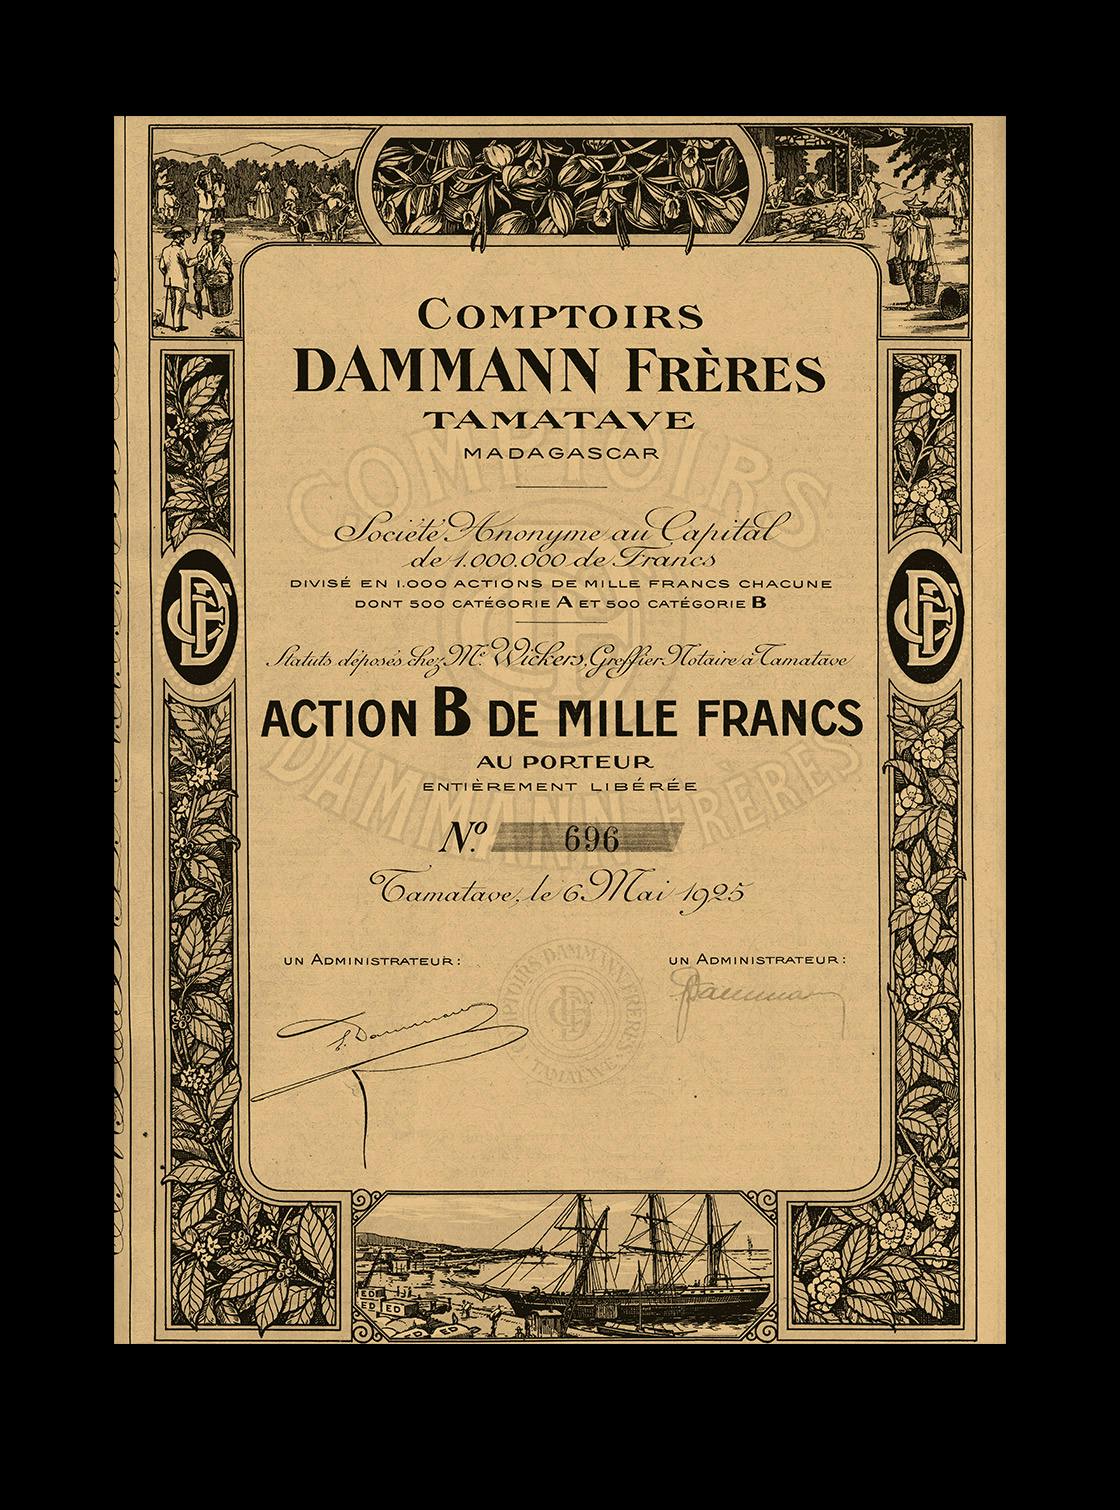 Dammann Frères, histoire d'une transmission réussie